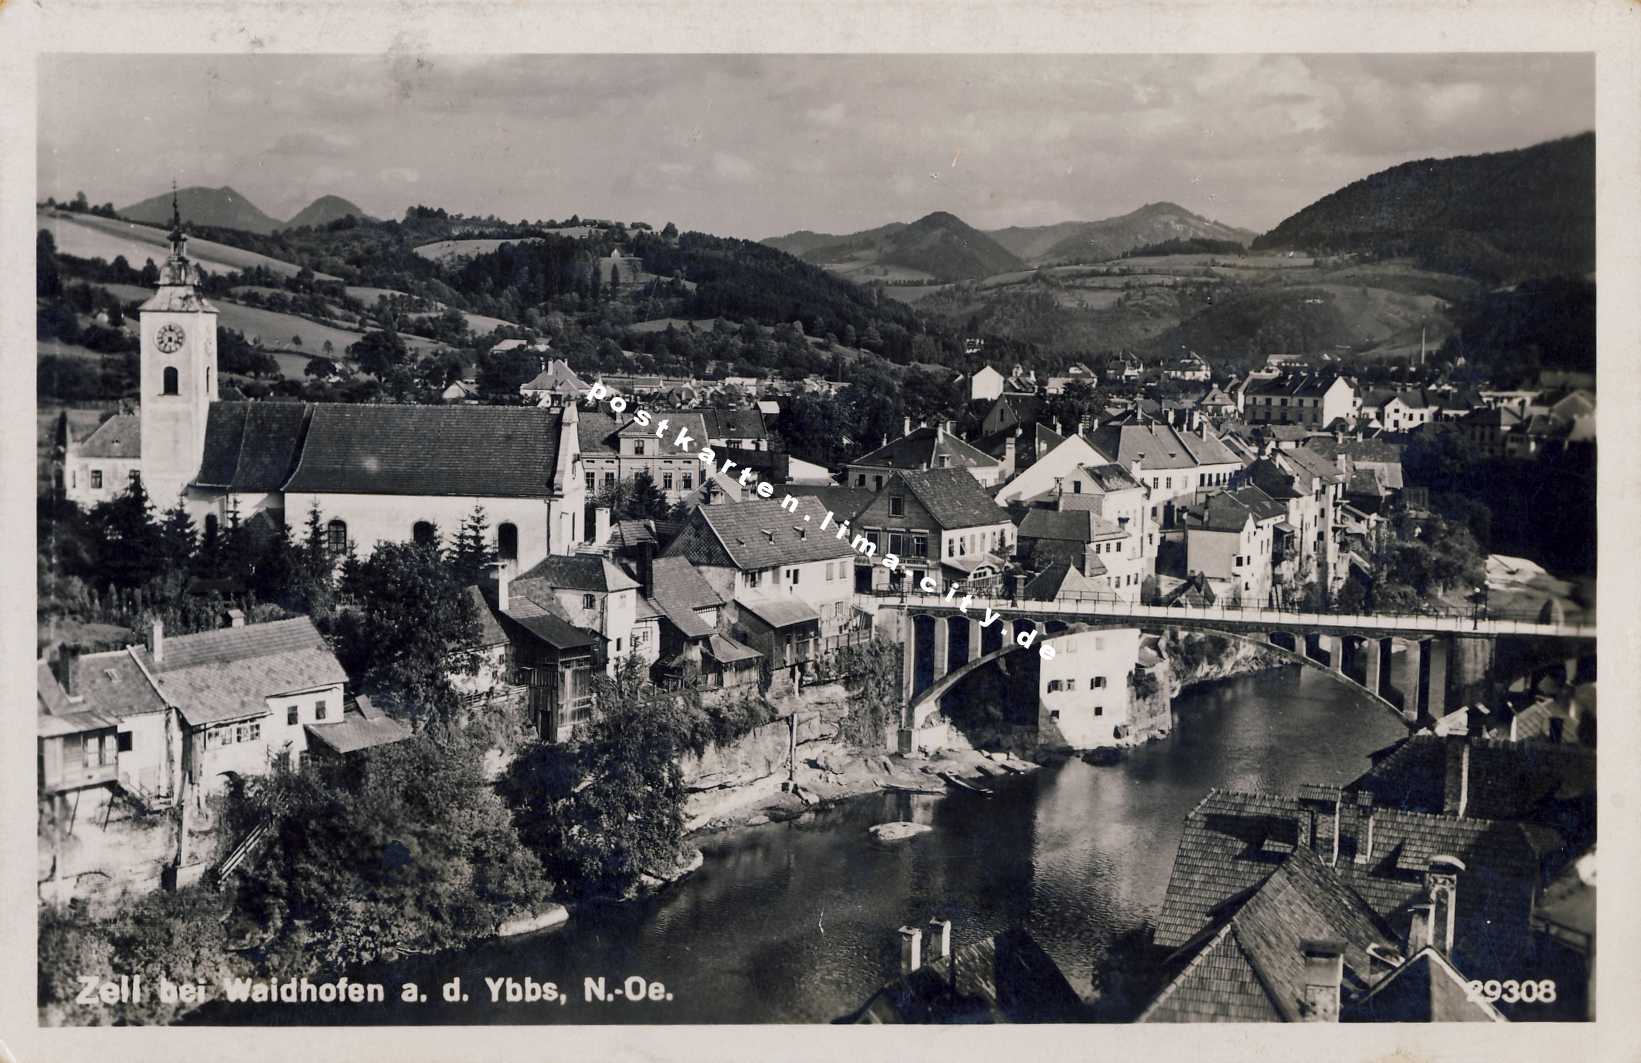 Waidhofen an der Ybbs 1935